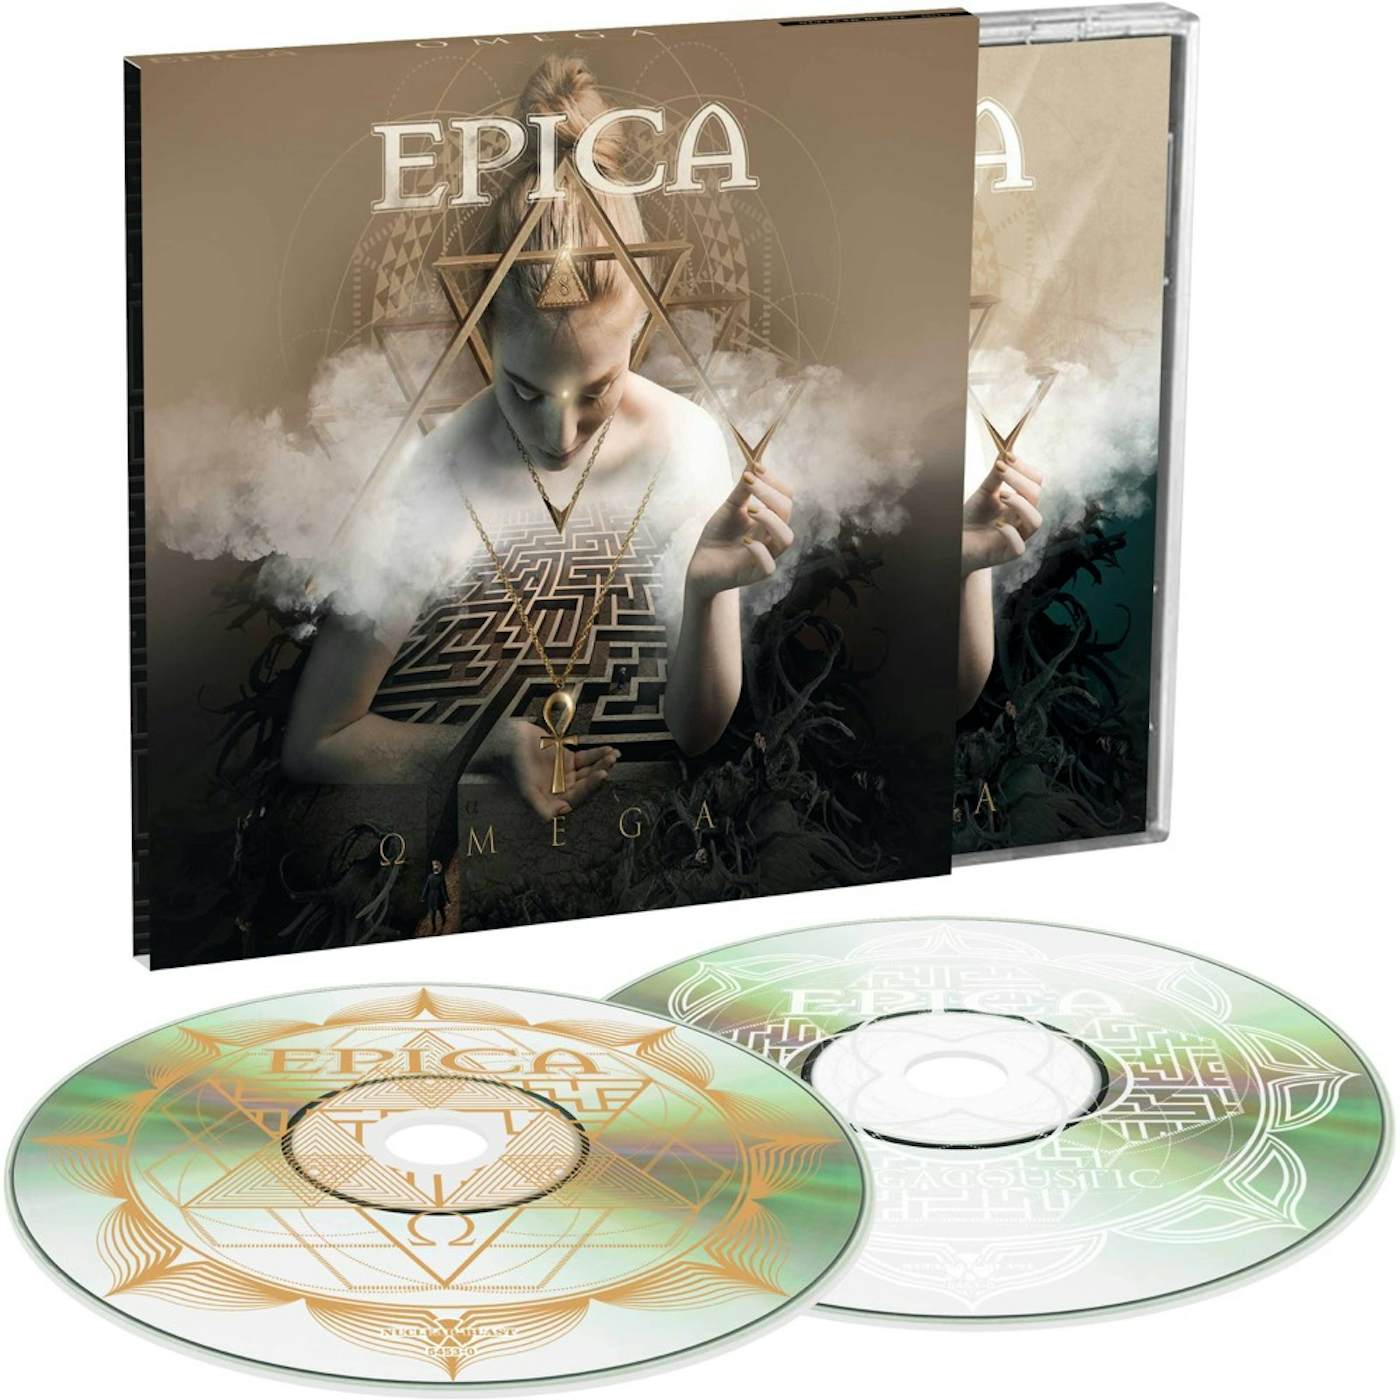 Epica OMEGA (LIMITED EDITION) (2CD SET) CD